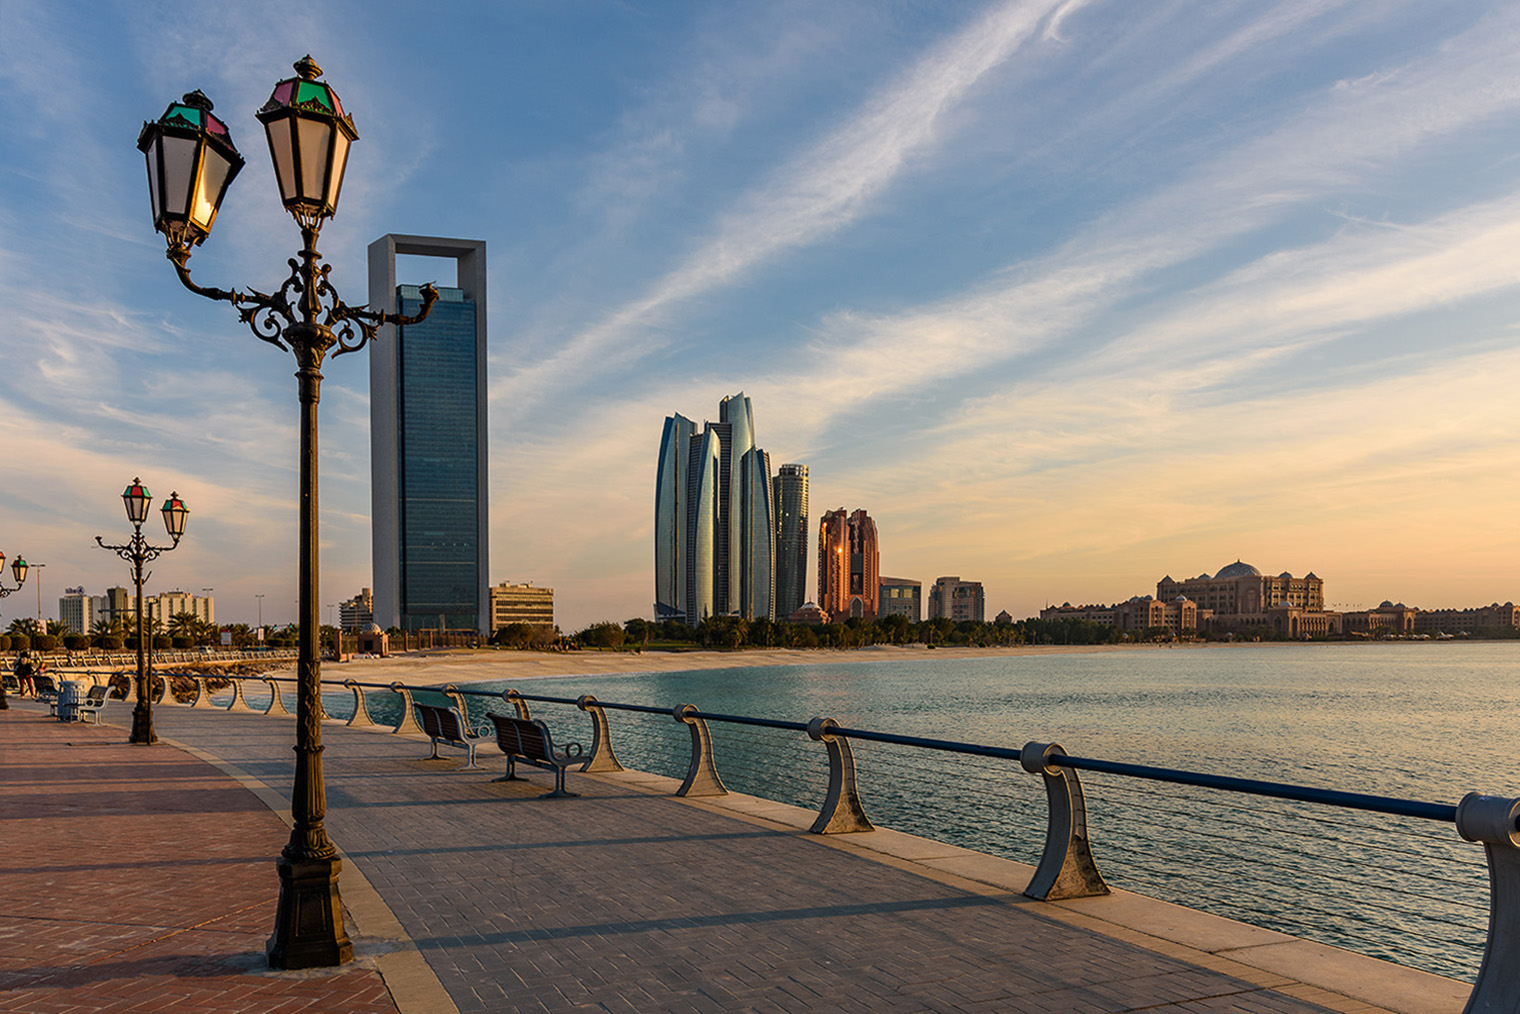 Набережная в Дохе. Фотография: M Salem / Shutterstock